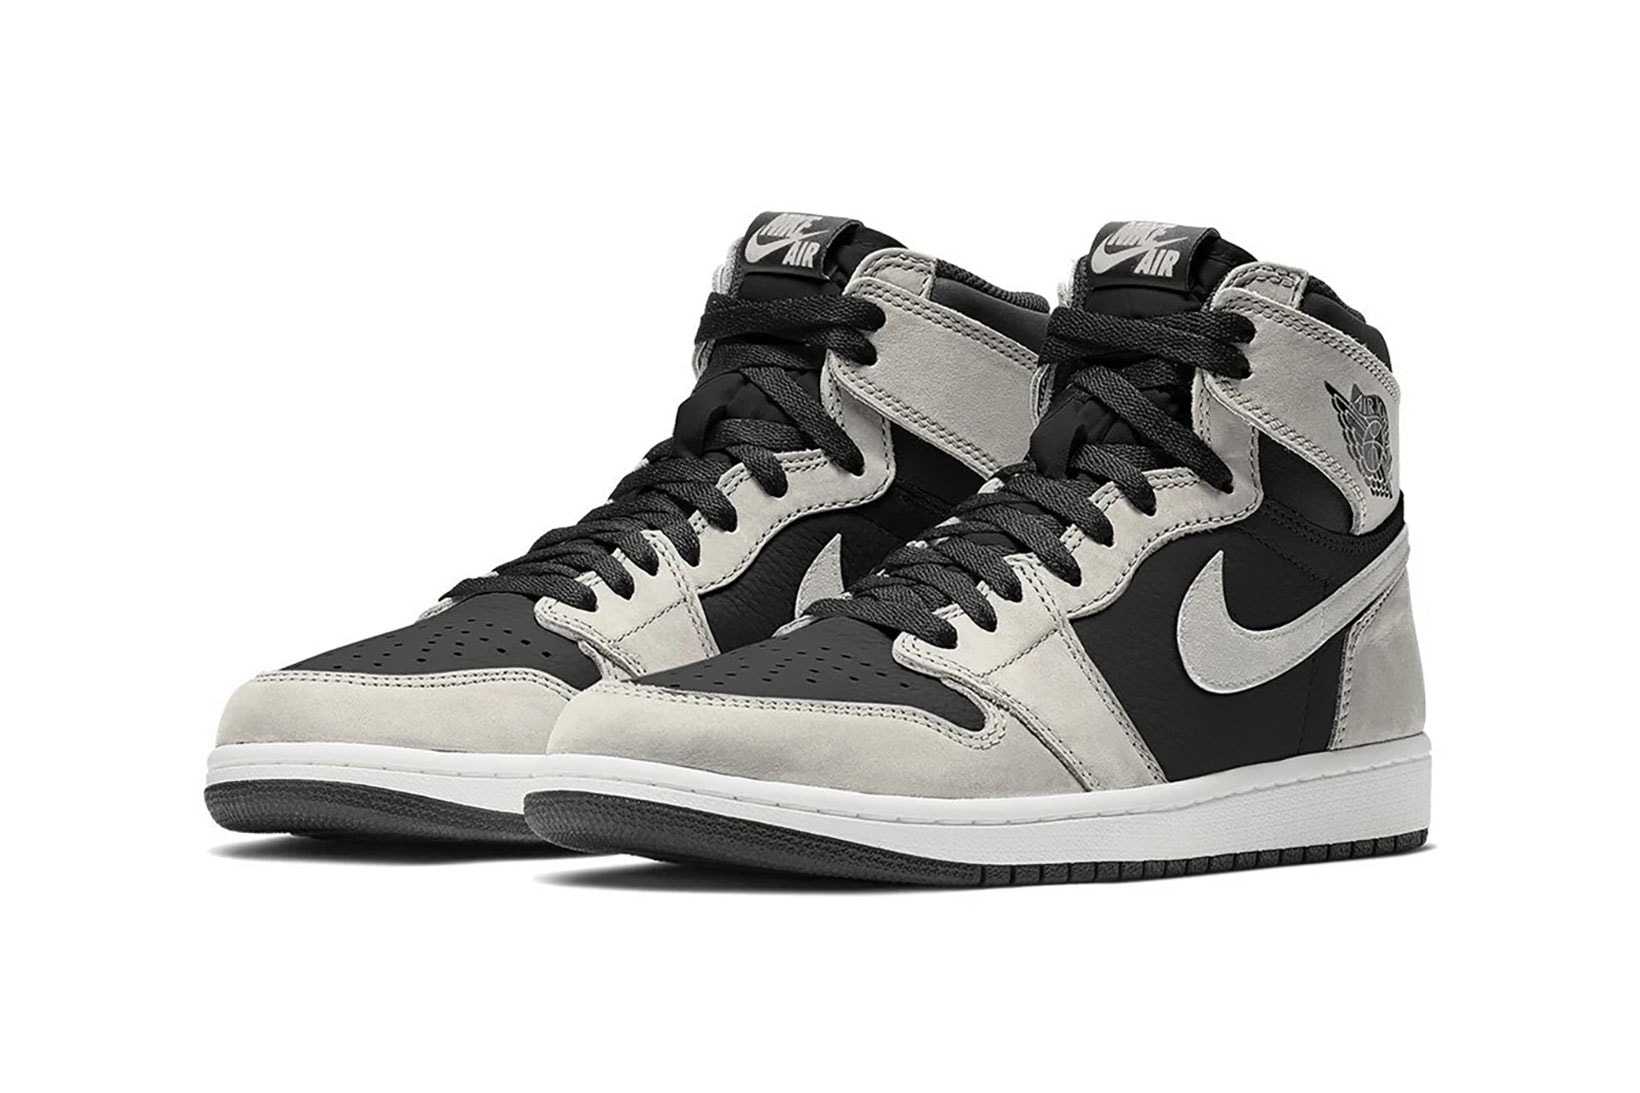 nike air jordan 1 high og sneakers black smoke grey white colorway sneakerhead shoes footwear 